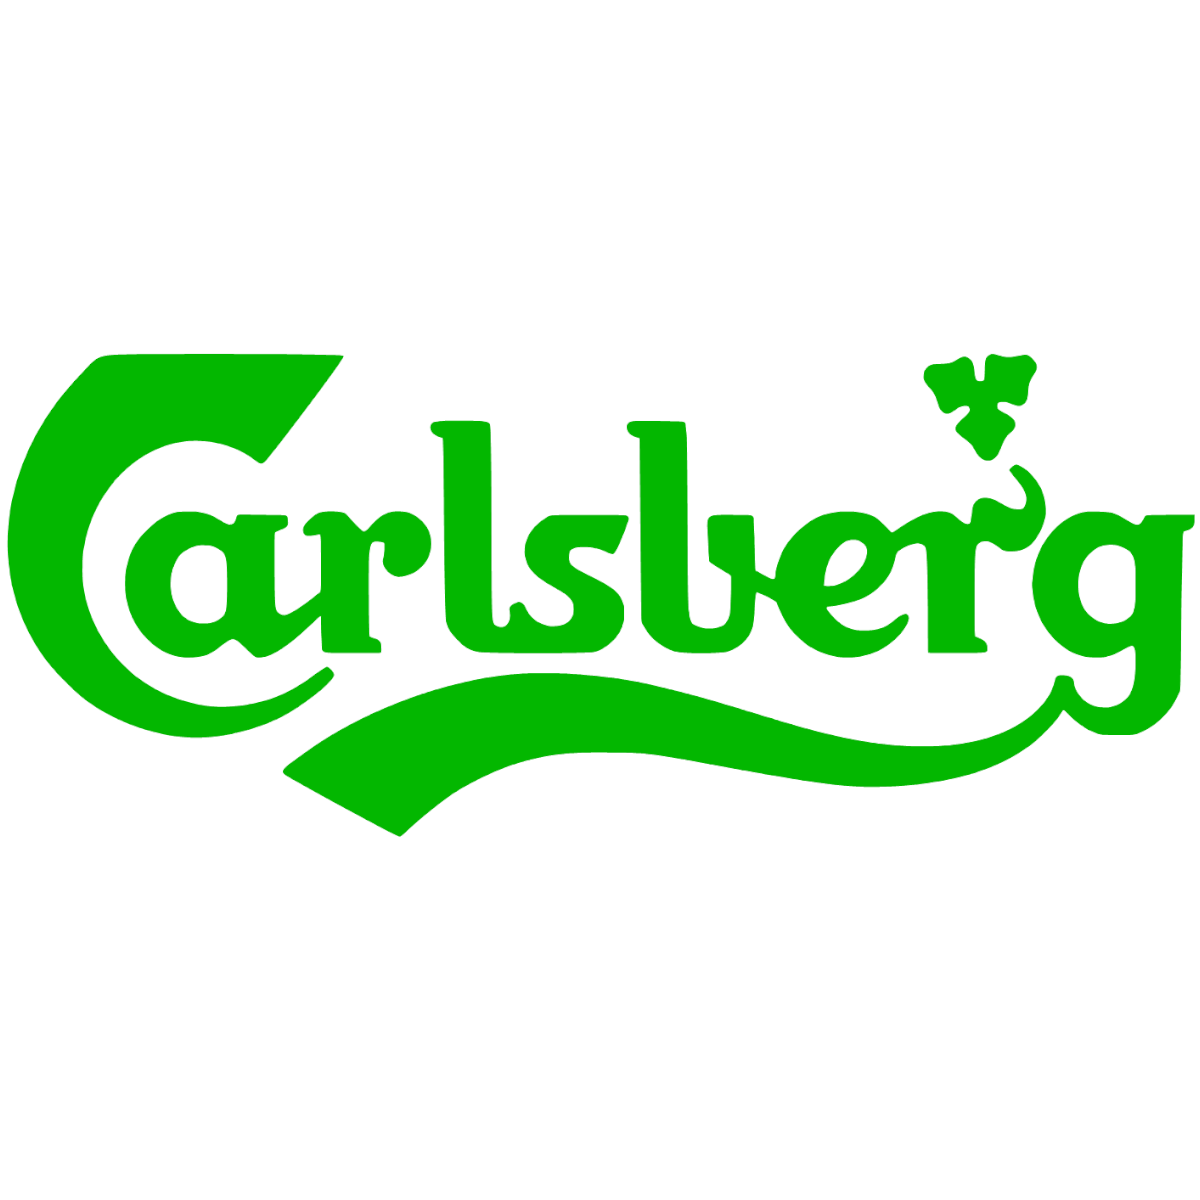 Carlsberg Dekal